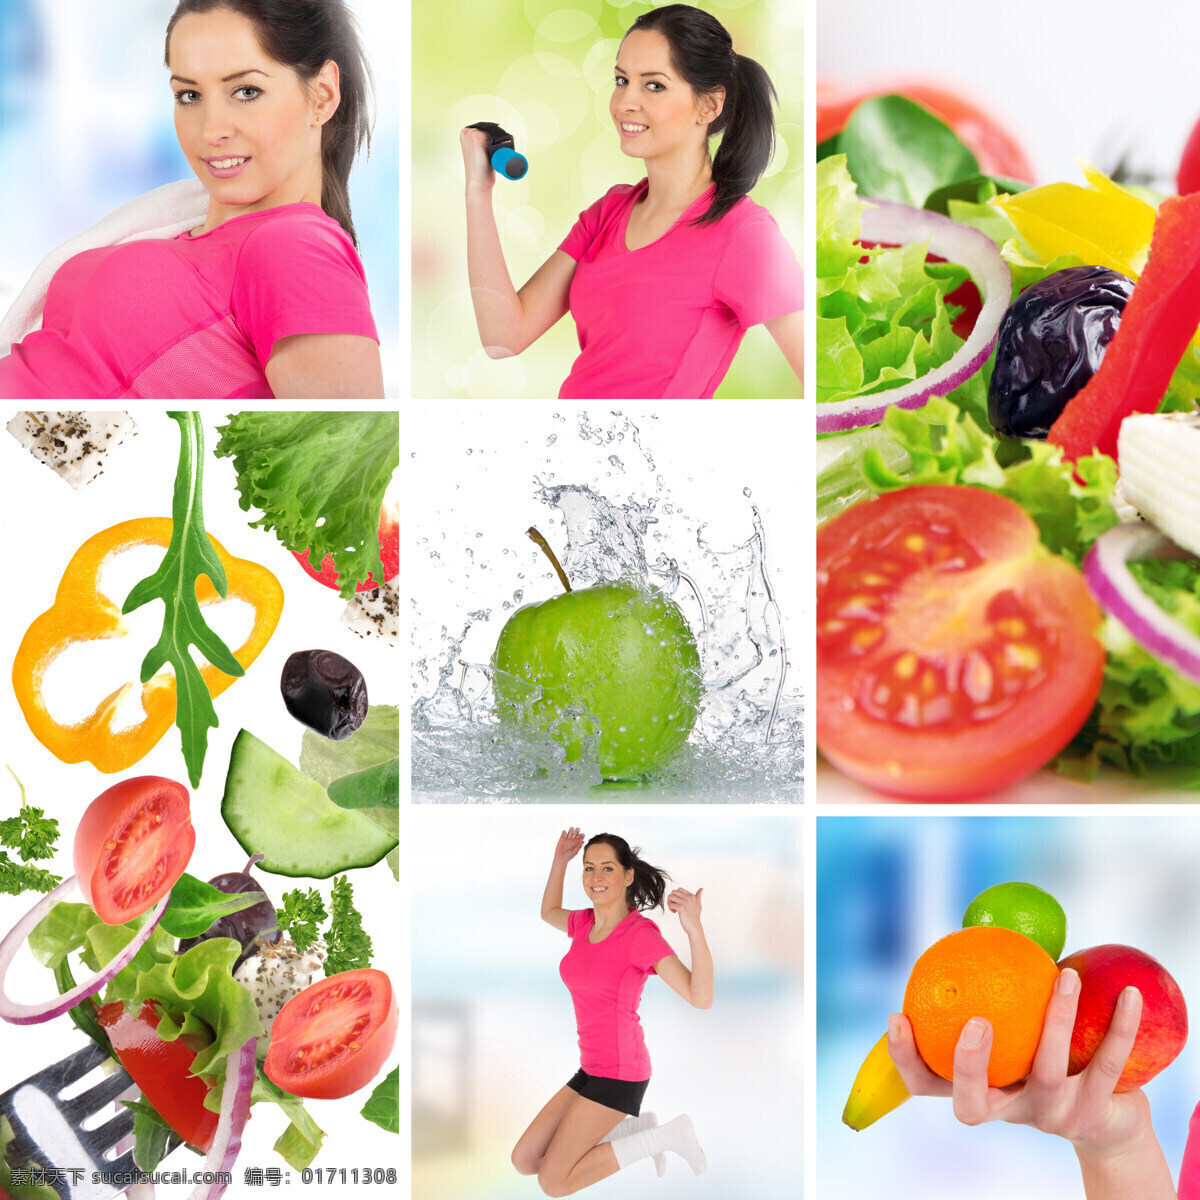 减肥 女人 蔬菜 尺子 运动 水果 西红柿 瘦身 食物 食材 生活人物 人物图片